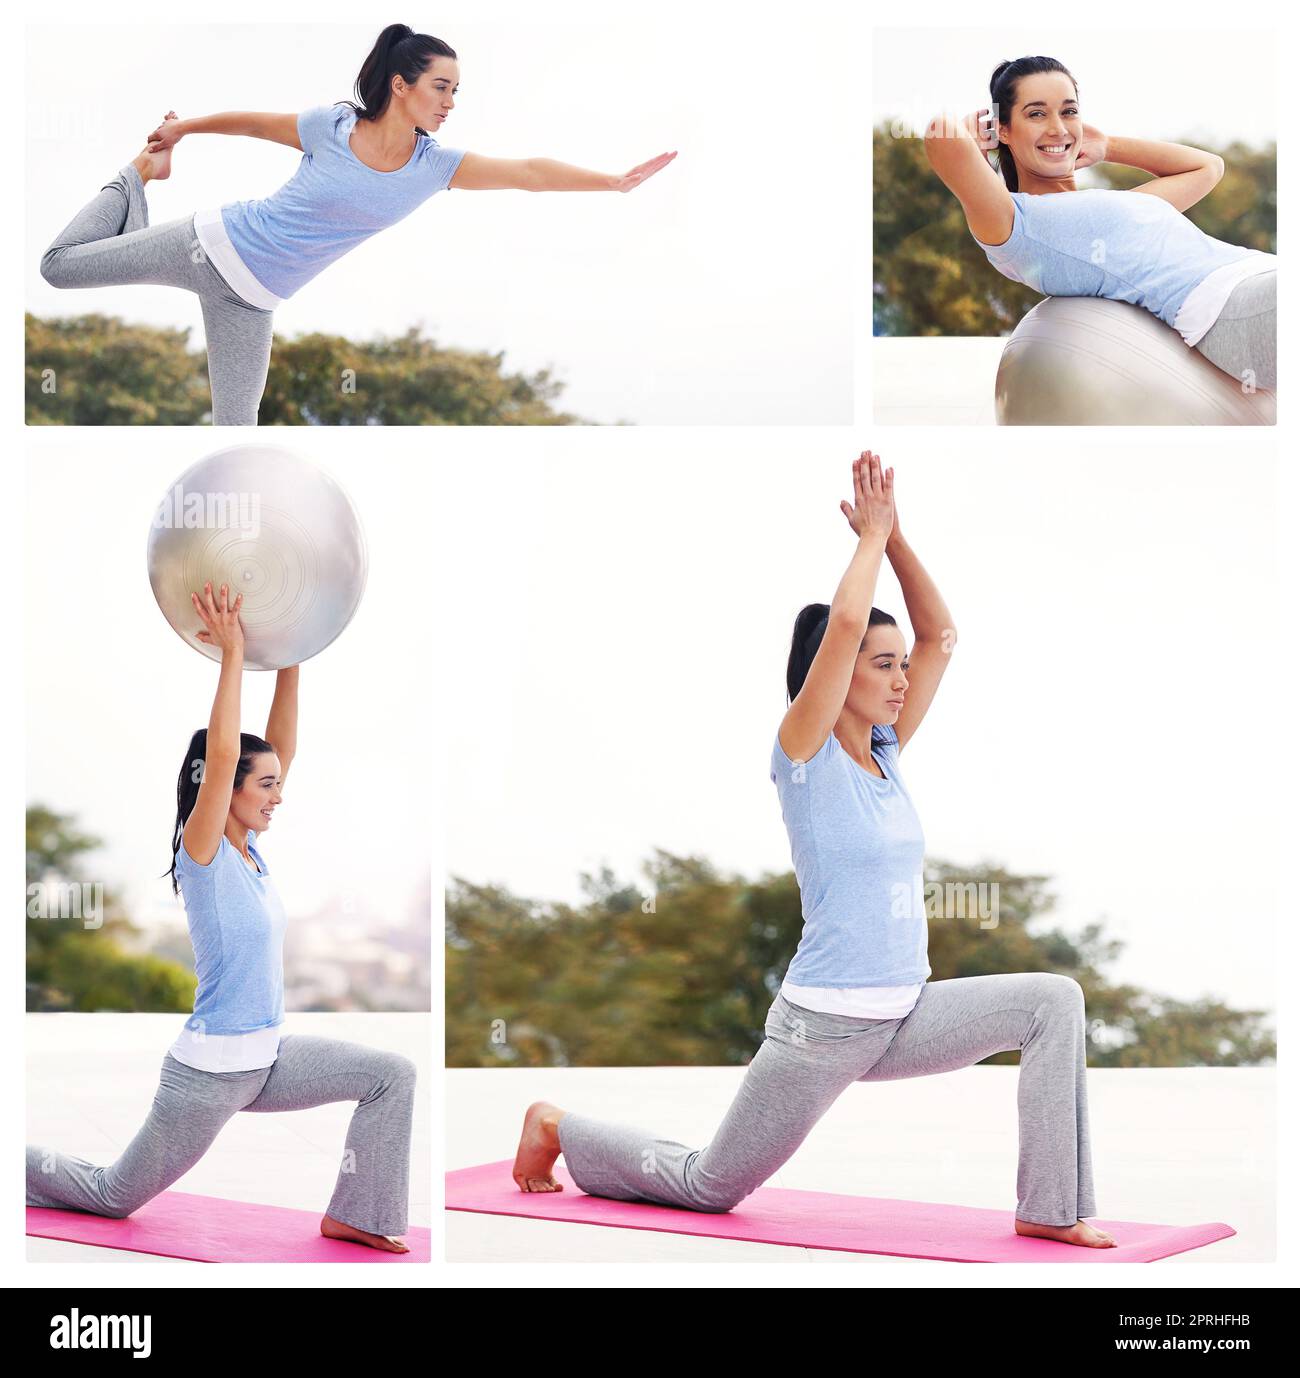 Lo yoga vi permette di trovare un nuovo tipo di libertà. Immagine composita di una giovane donna attraente che si esercita all'esterno. Foto Stock